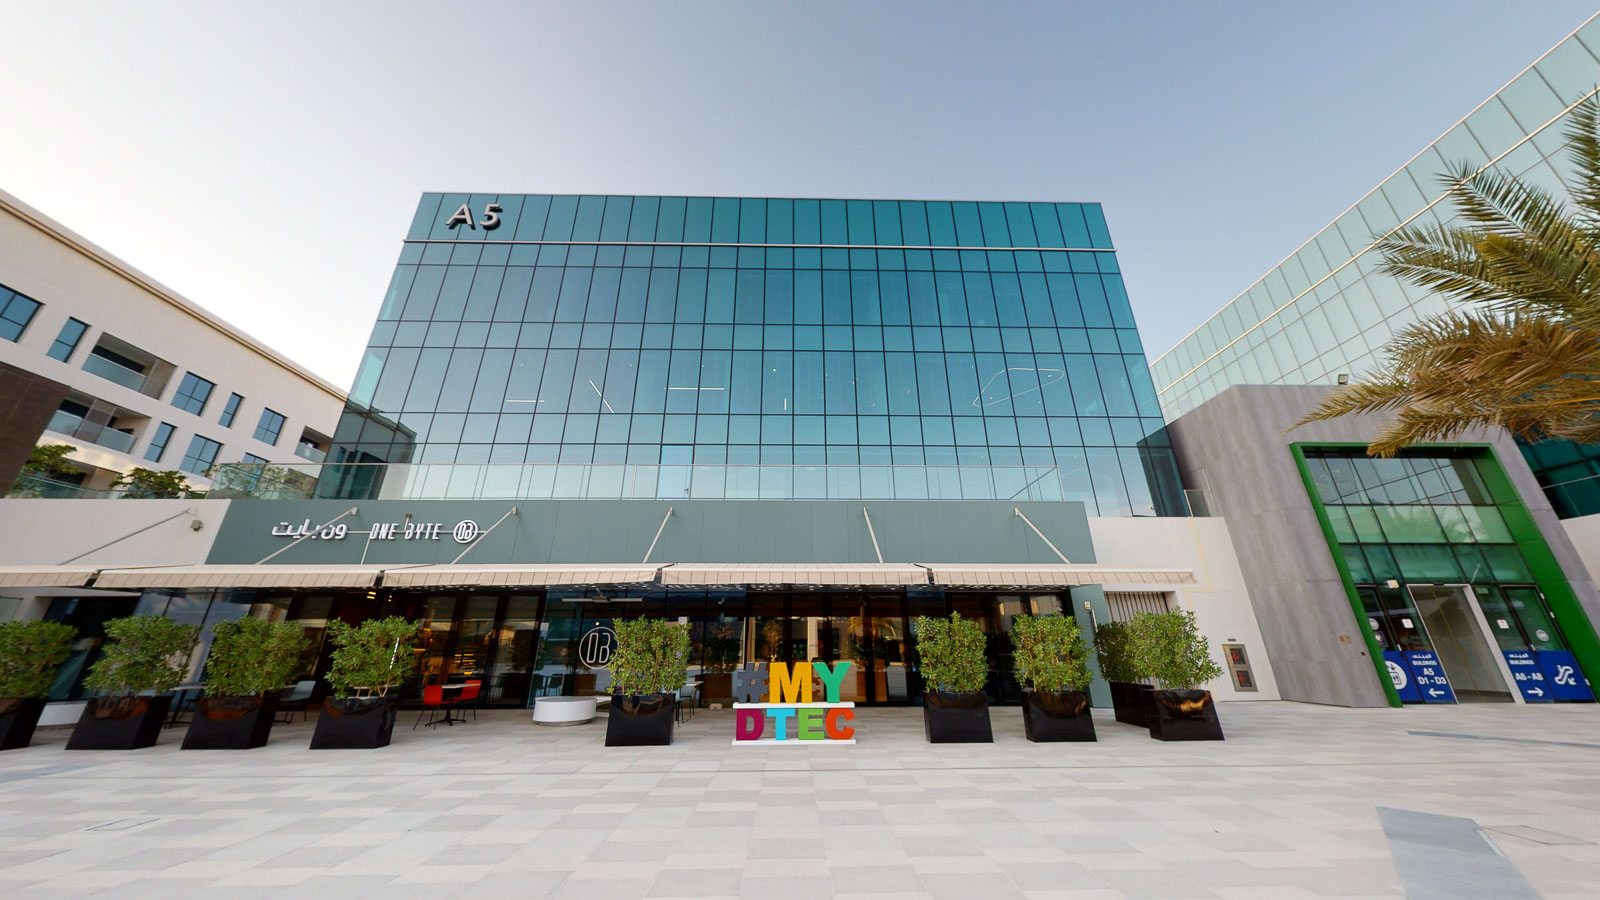 DTEC – Dubai Technology Entrepreneur Campus